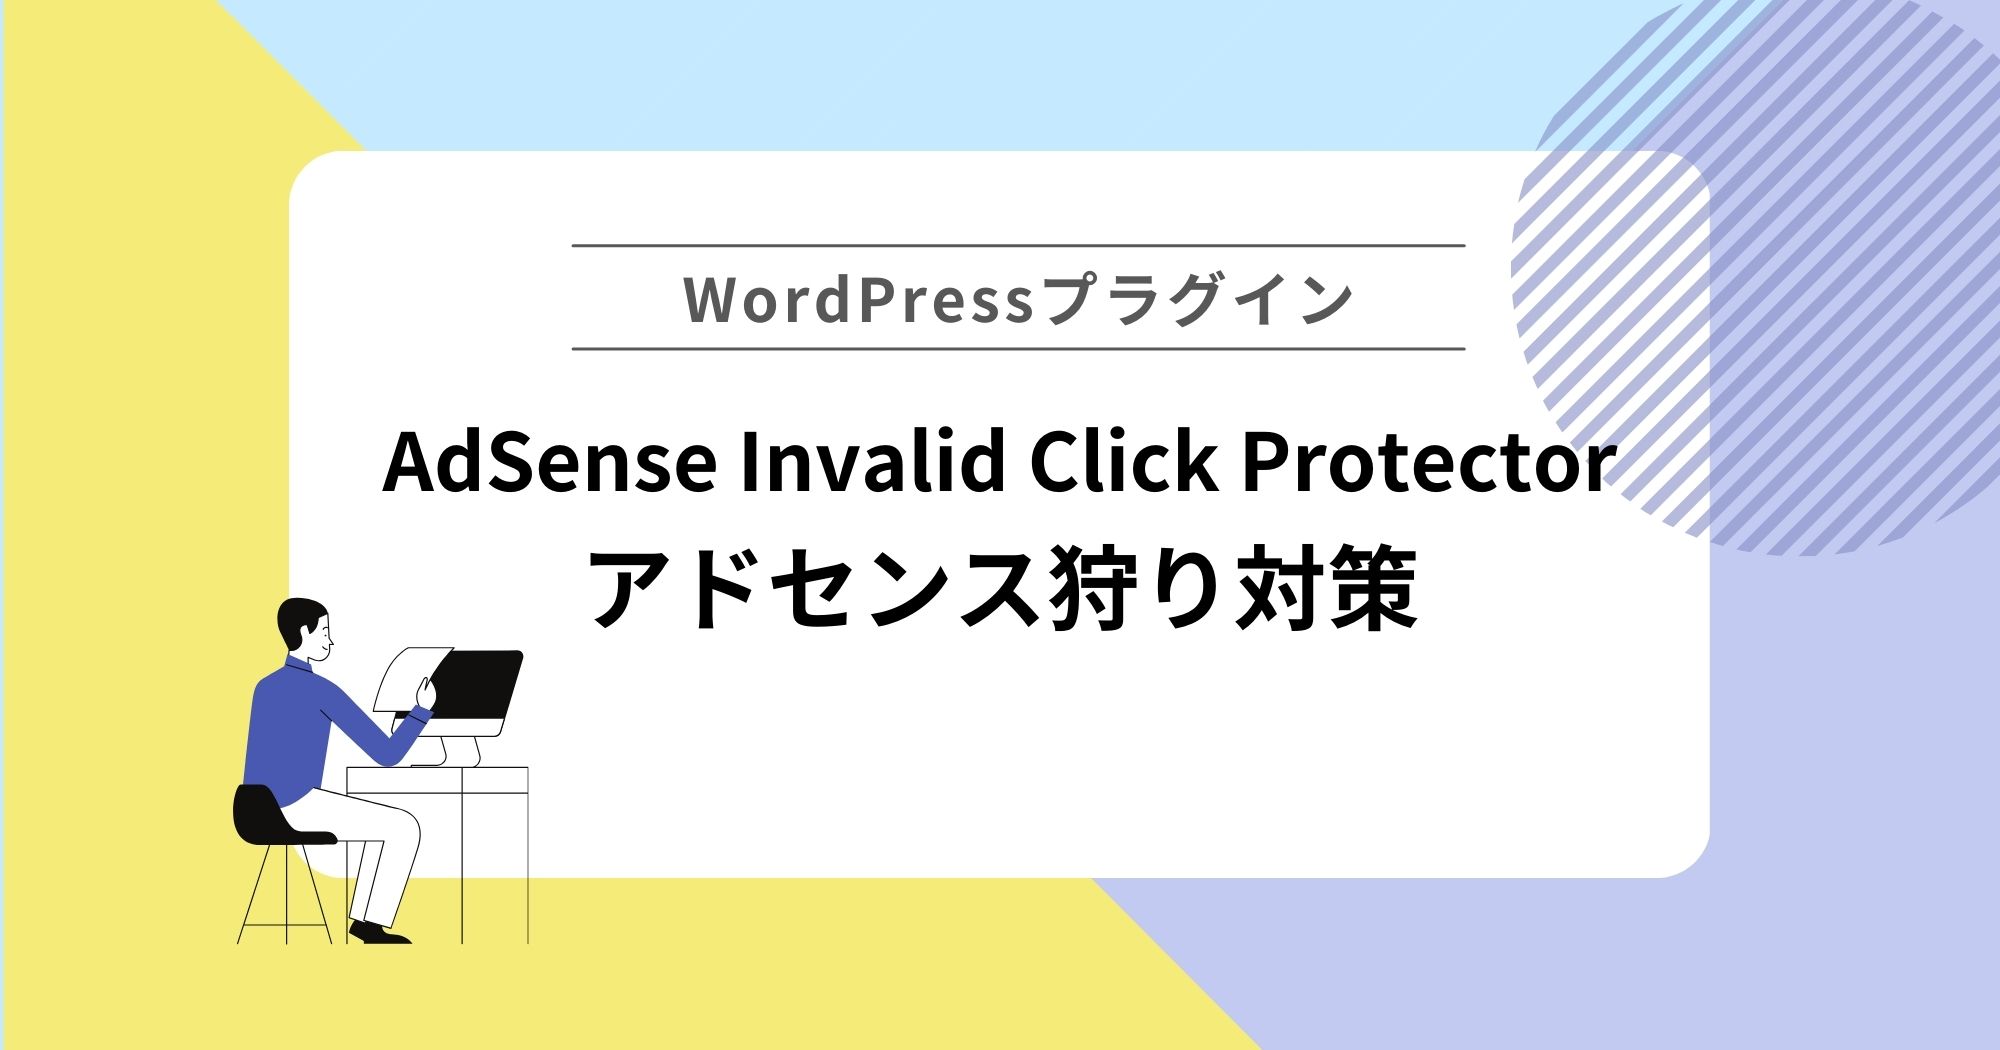 アドセンス狩り対策プラグイン「AdSense Invalid Click Protector」でアドセンス狩り対策